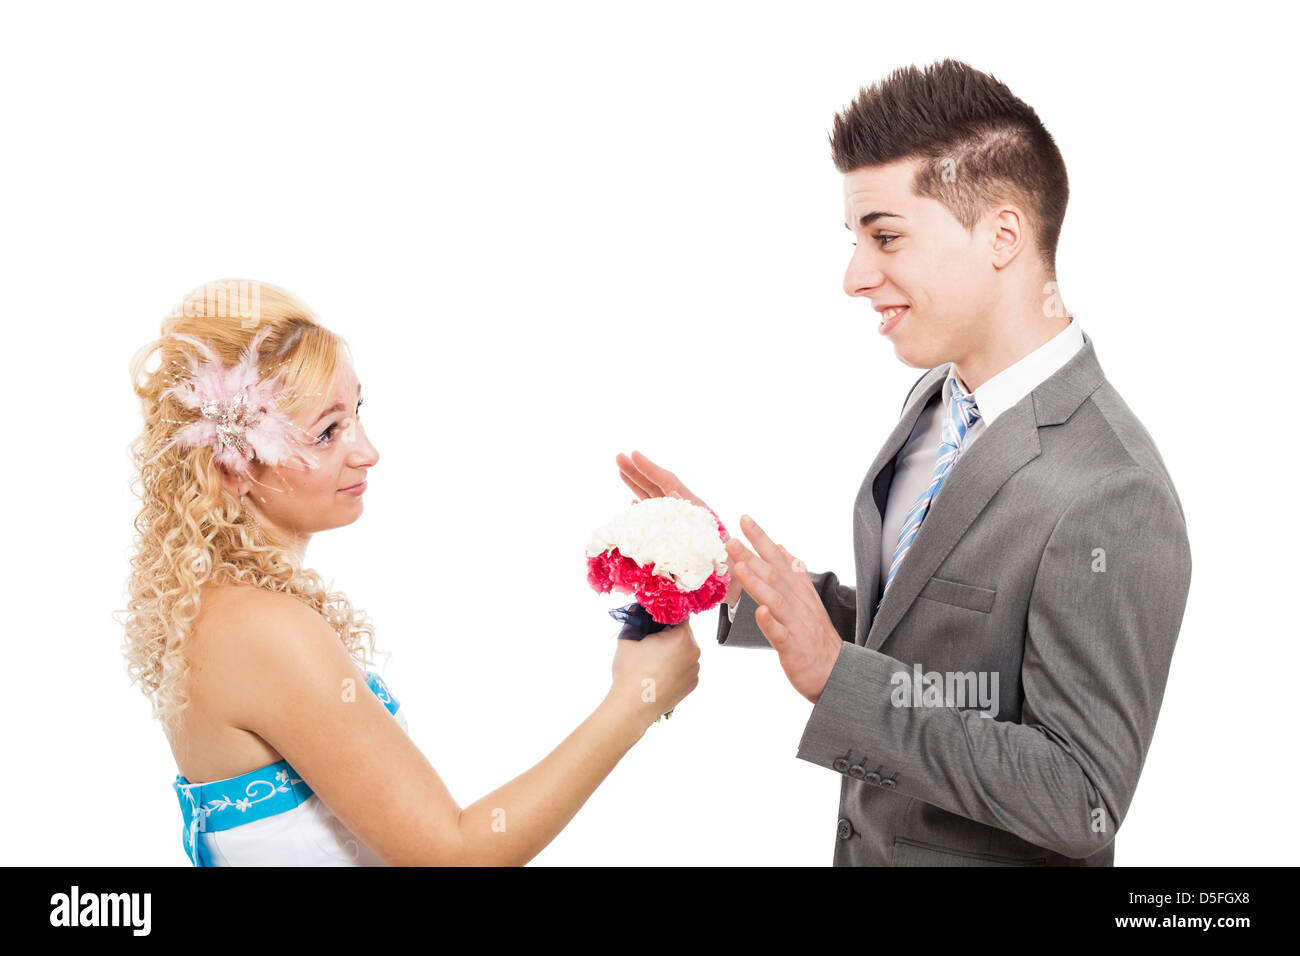 Giovane donna propone con bouquet, isolati su sfondo bianco Foto Stock